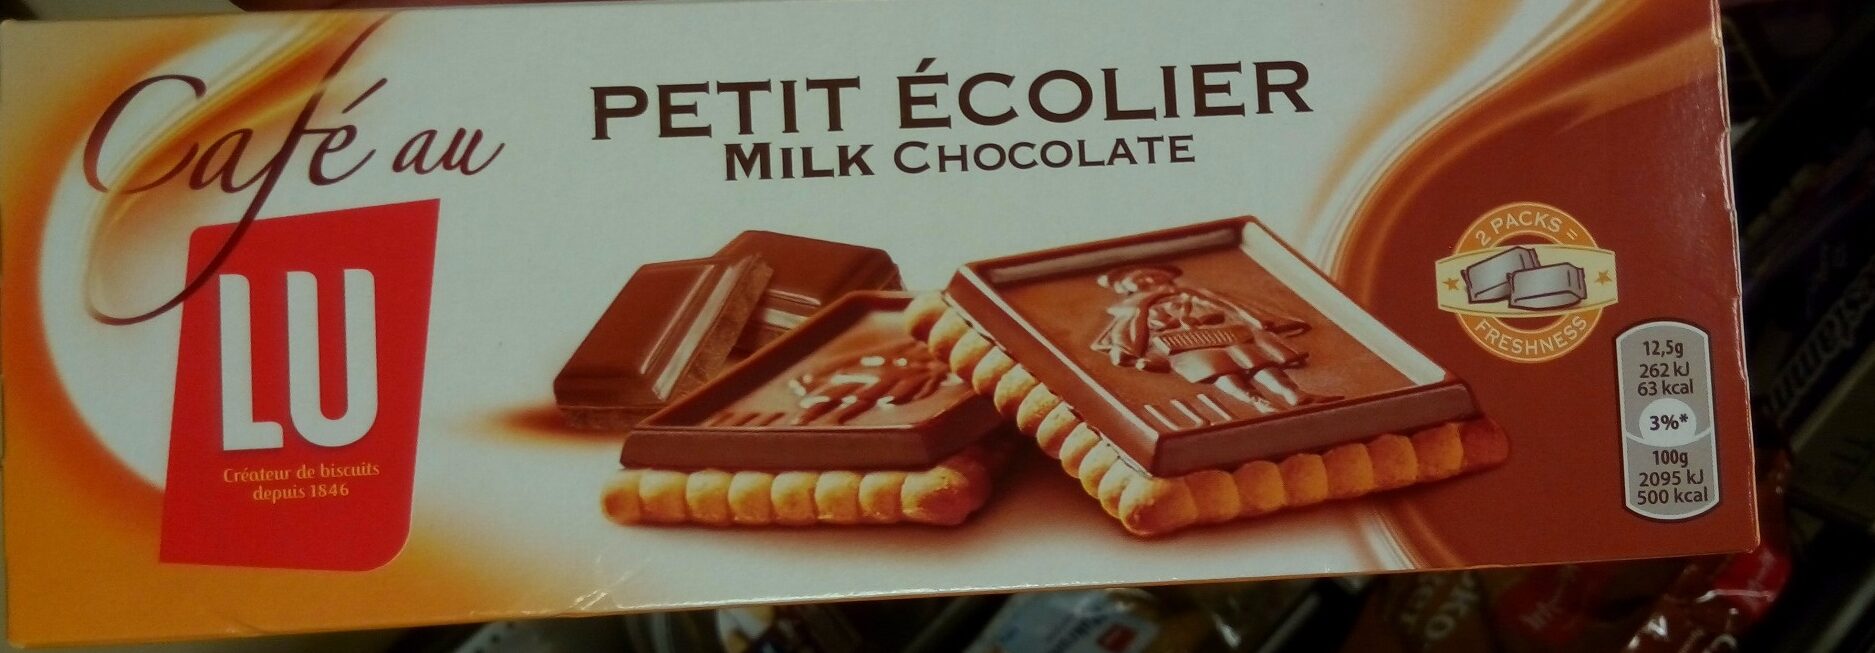 Petit Ecolier chocolat au lait - Product - fr